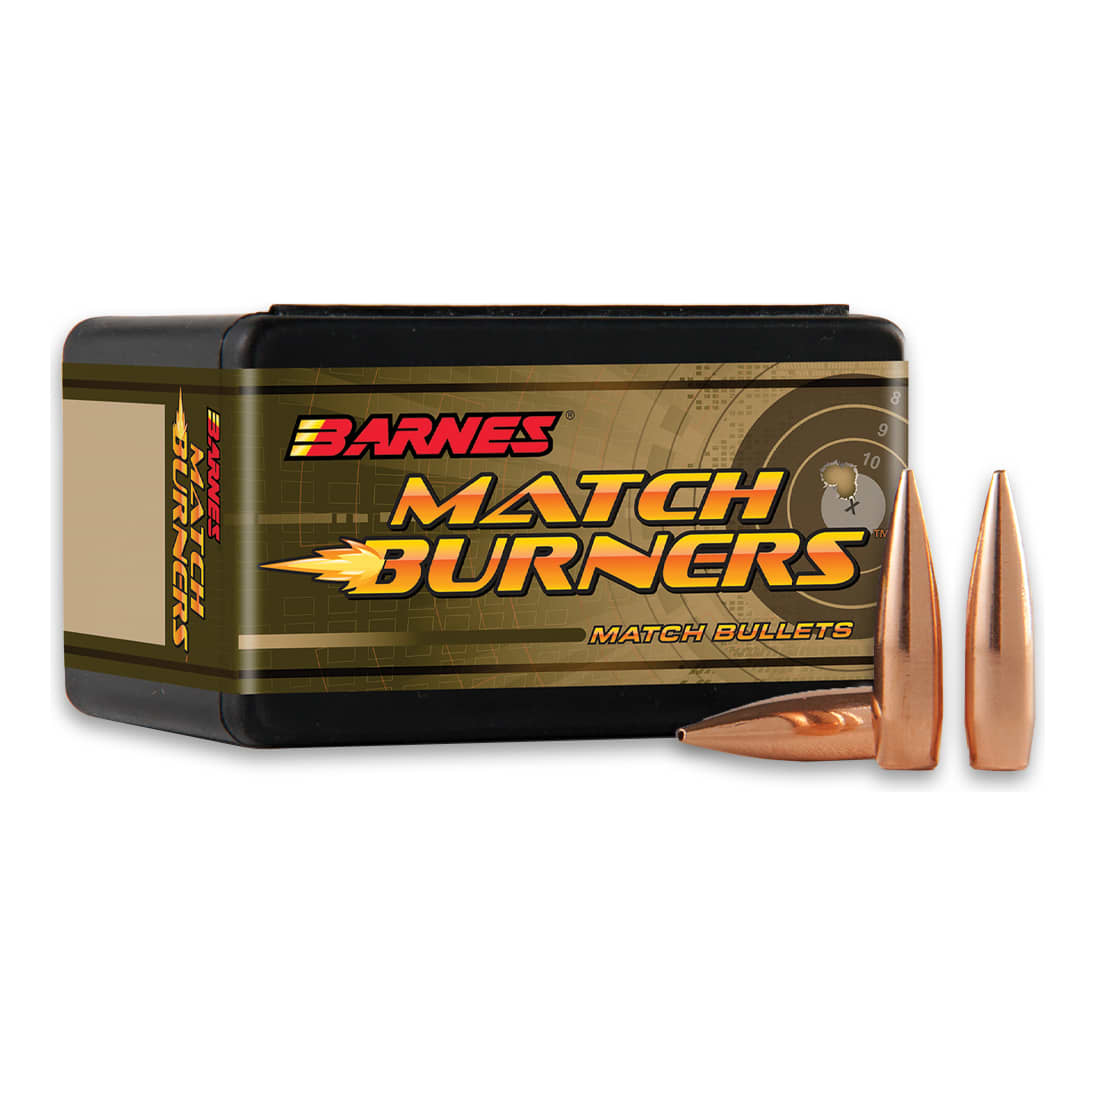 Barnes® Match Burners™ Match Bullets